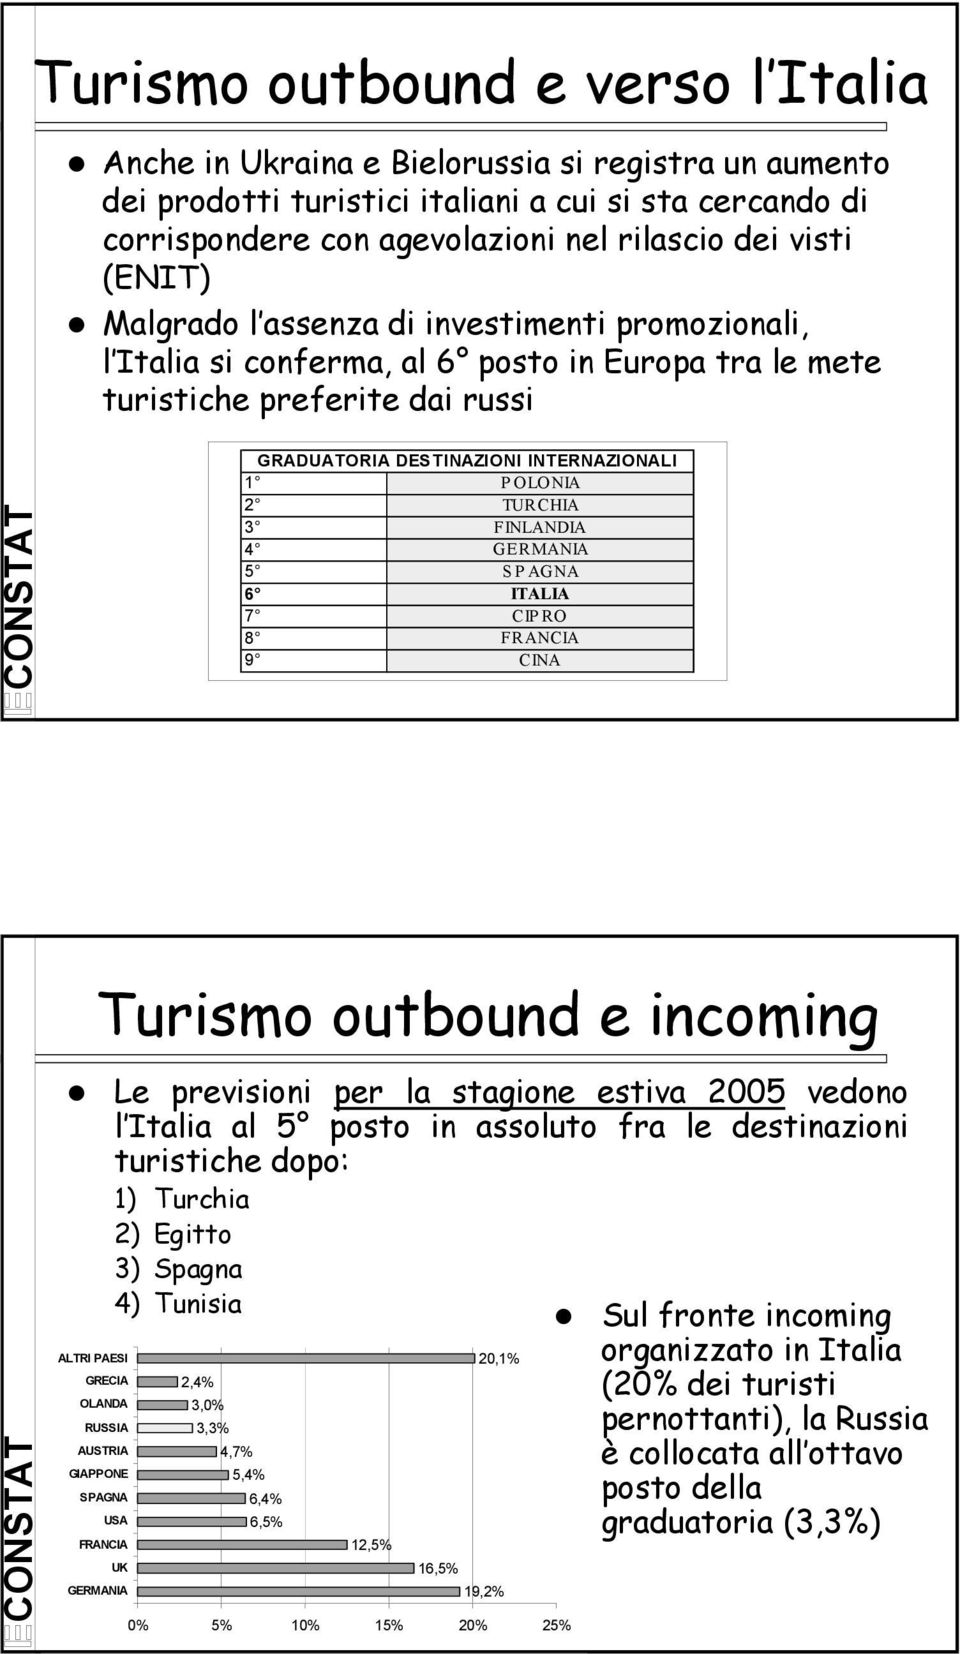 TURCHIA 3 FINLANDIA 4 GERMANIA 5 SPAGNA 6 ITALIA 7 CIPRO 8 FRANCIA 9 CINA Turismo outbound e incoming Le previsioni per la stagione estiva 2005 vedono l Italia al 5 posto in assoluto fra le